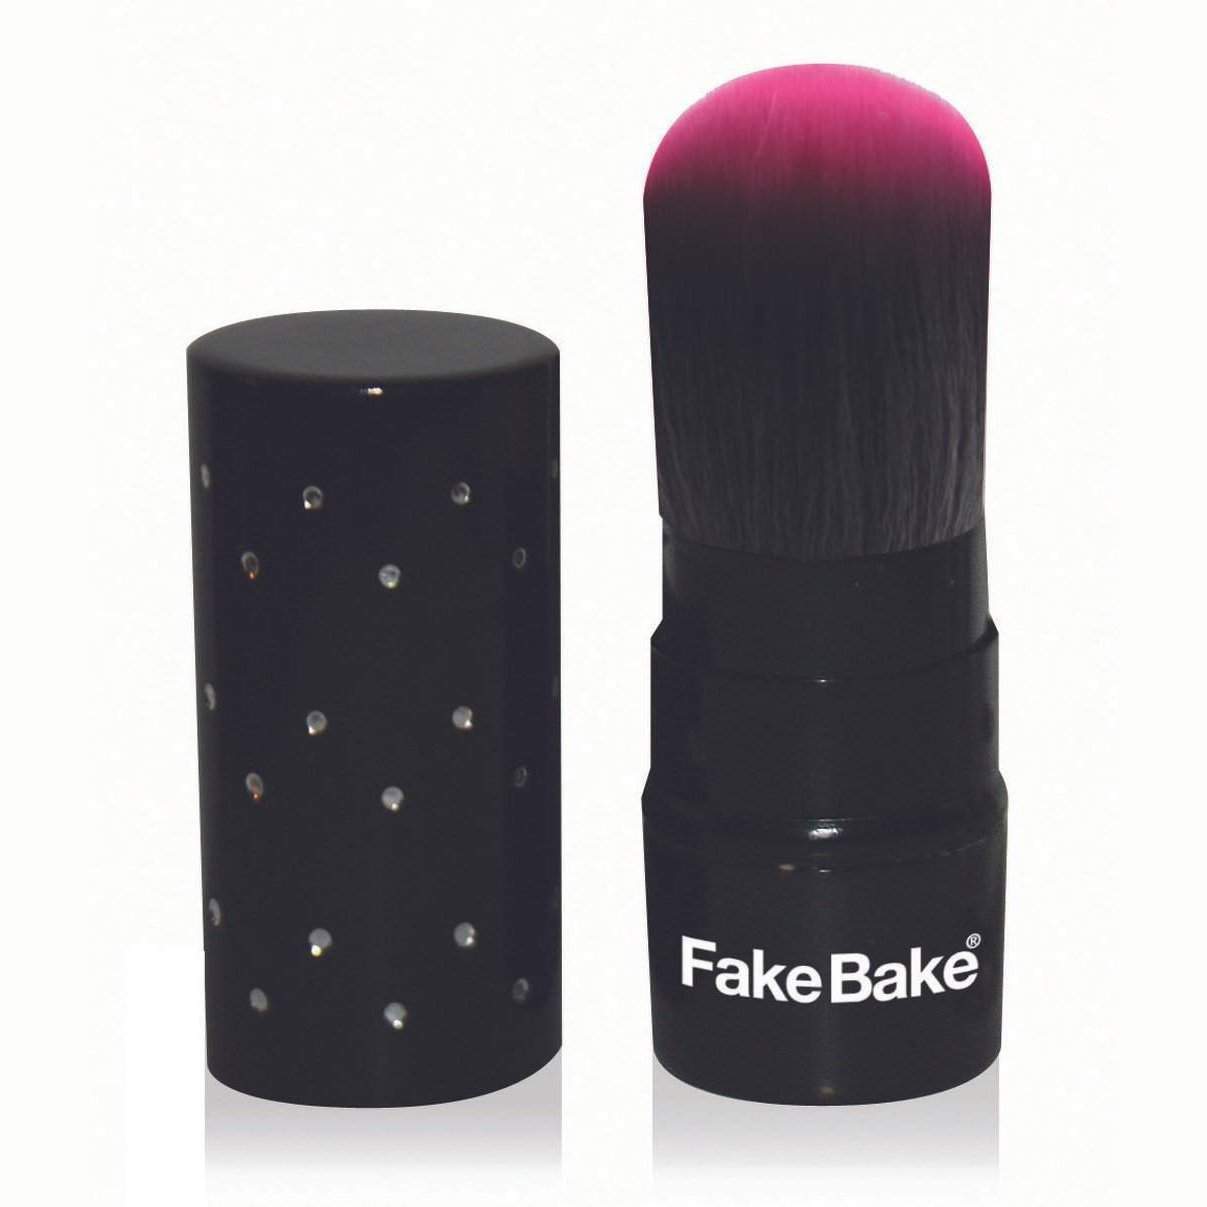 Fake Bake Kabuki Brush-Fake Bake-BB_Self-Tanners,Brand_Fake Bake,Collection_Bath and Body,Collection_Tools and Brushes,Tool_ Makeup Brushes